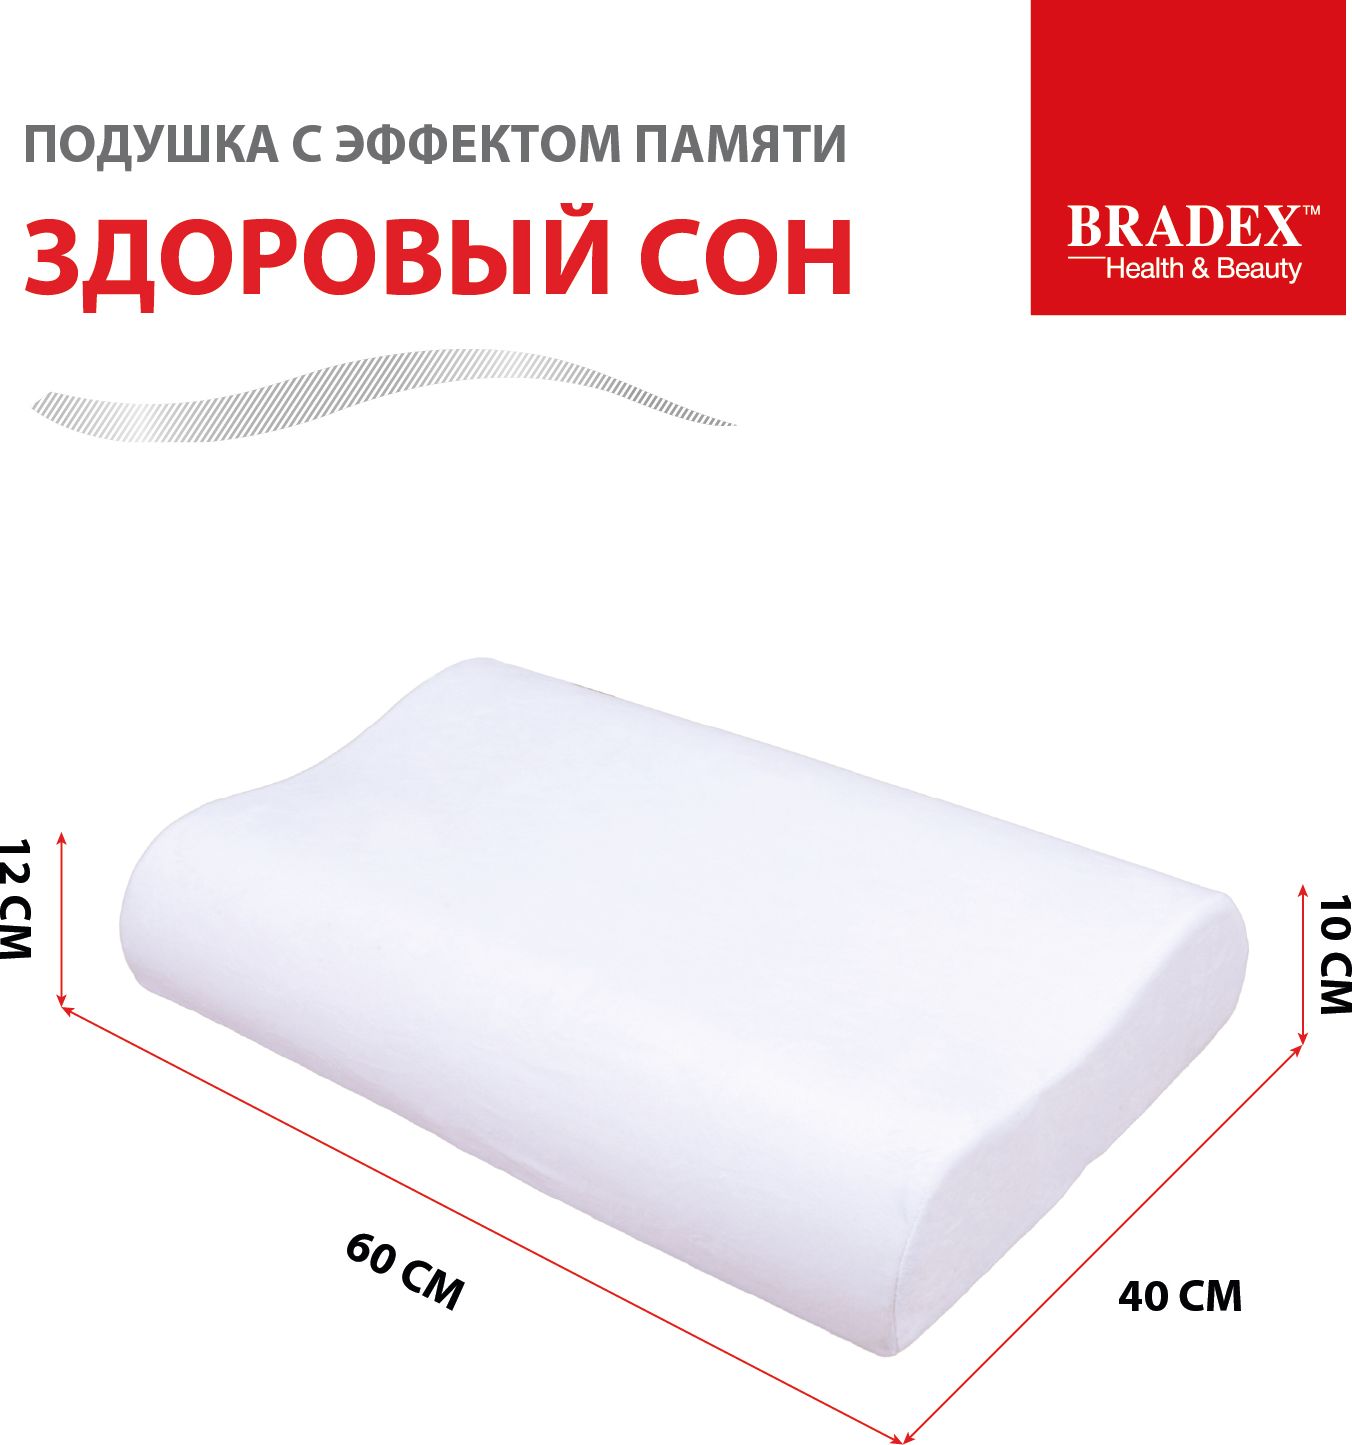 Подушка с эффектом памяти «ЗДОРОВЫЙ СОН», BRADEX, 40*60 см